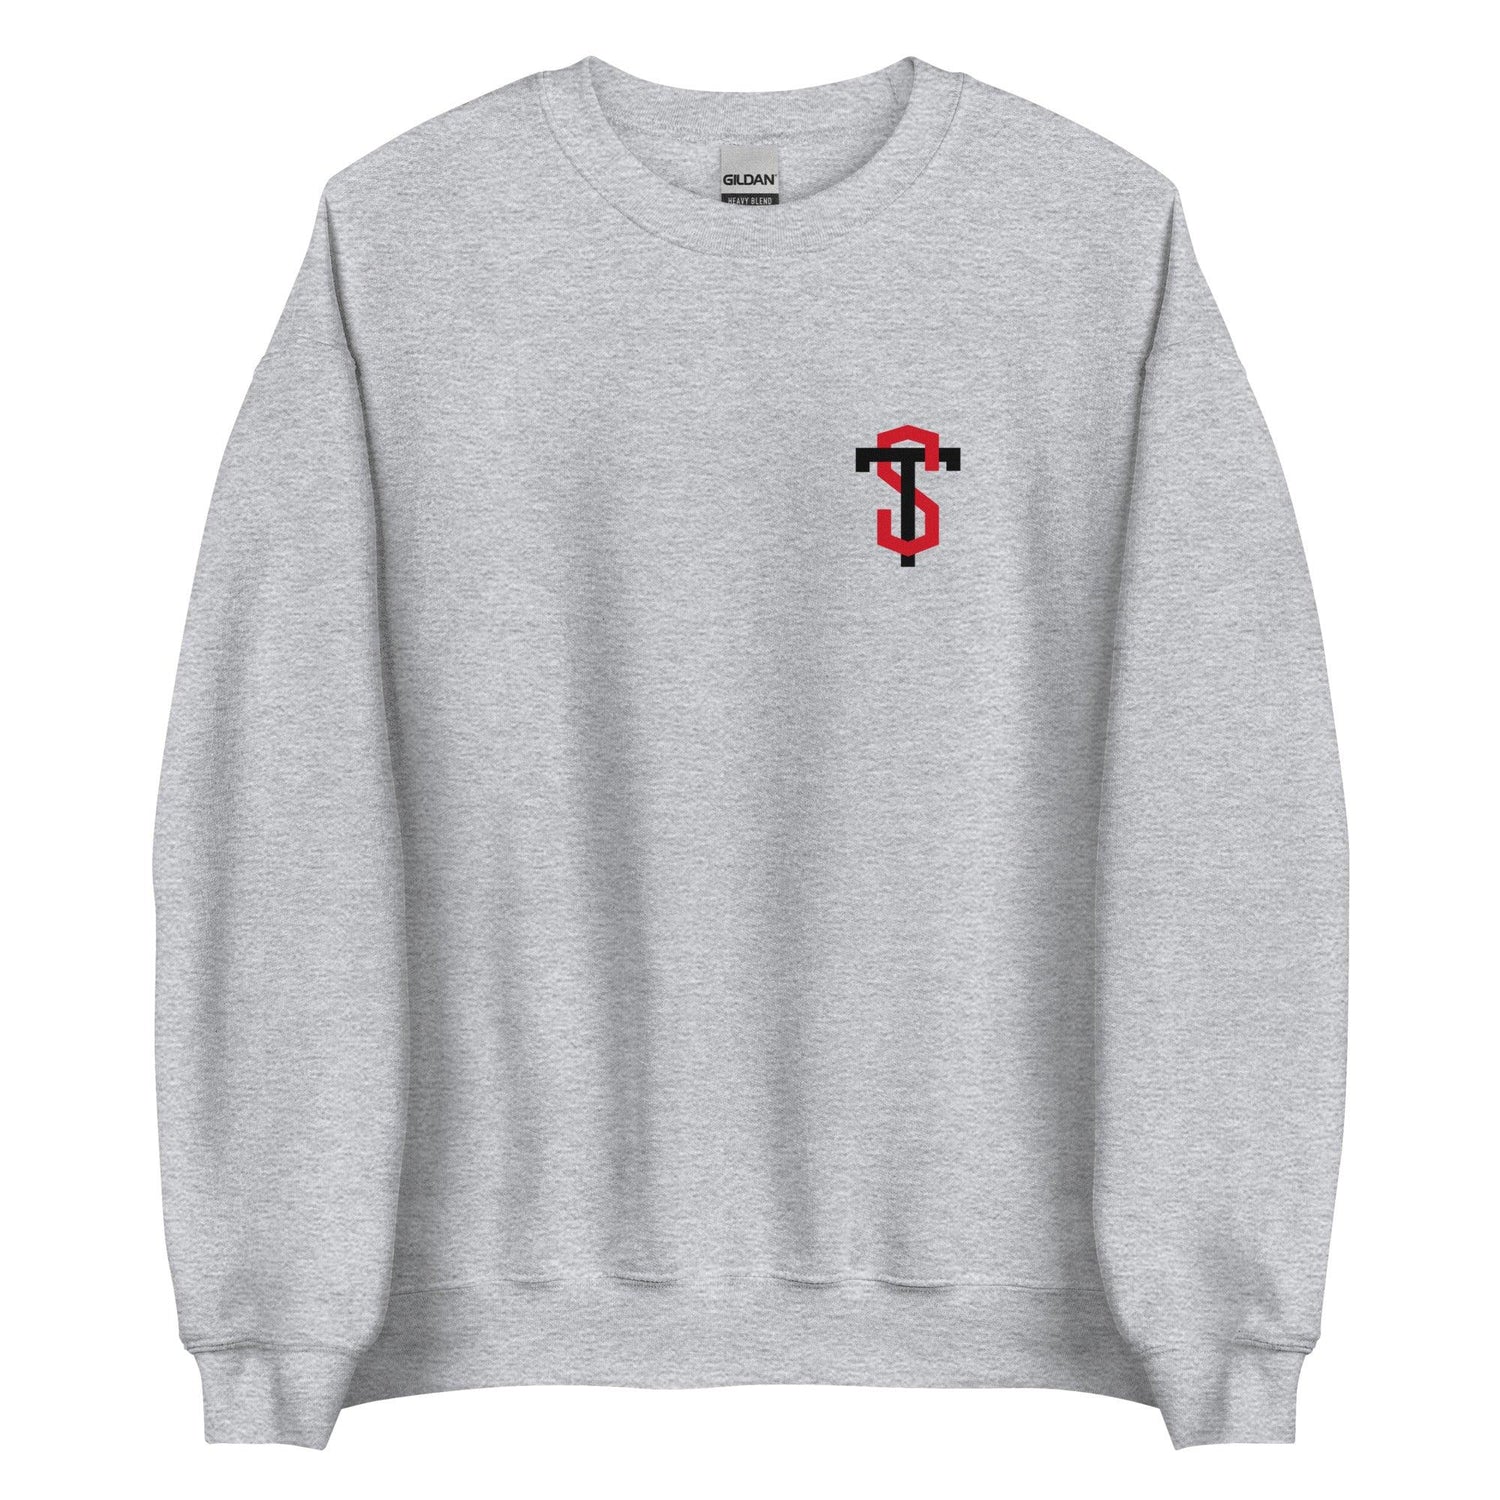 Terquavion Smith "Essential" Sweatshirt - Fan Arch